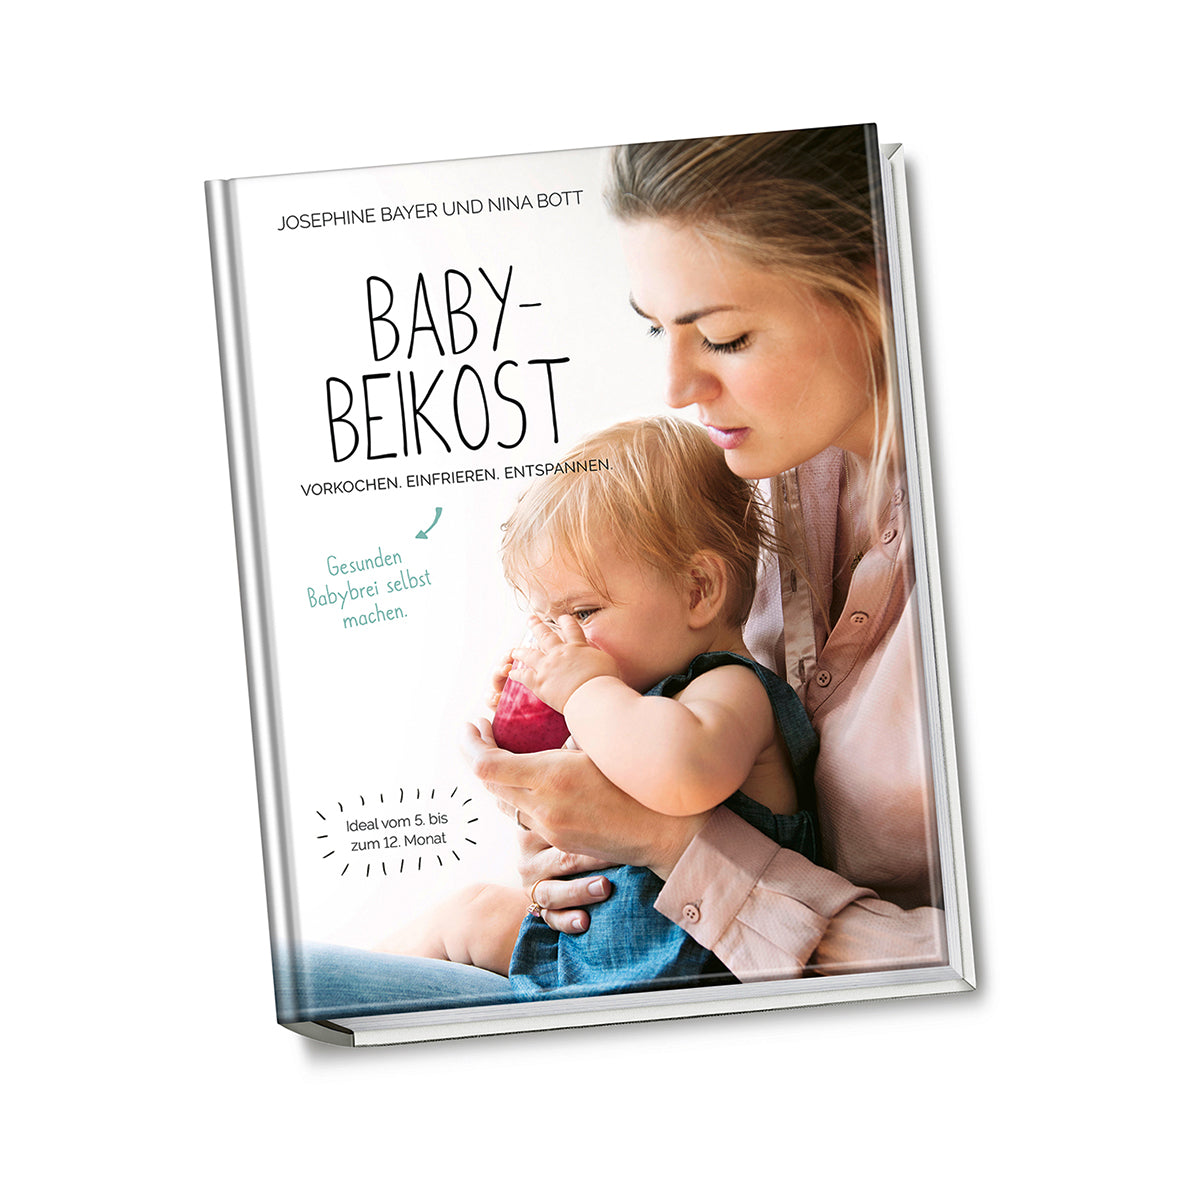 Beeikost-Buch von Josephine Bayer und Nina Bott